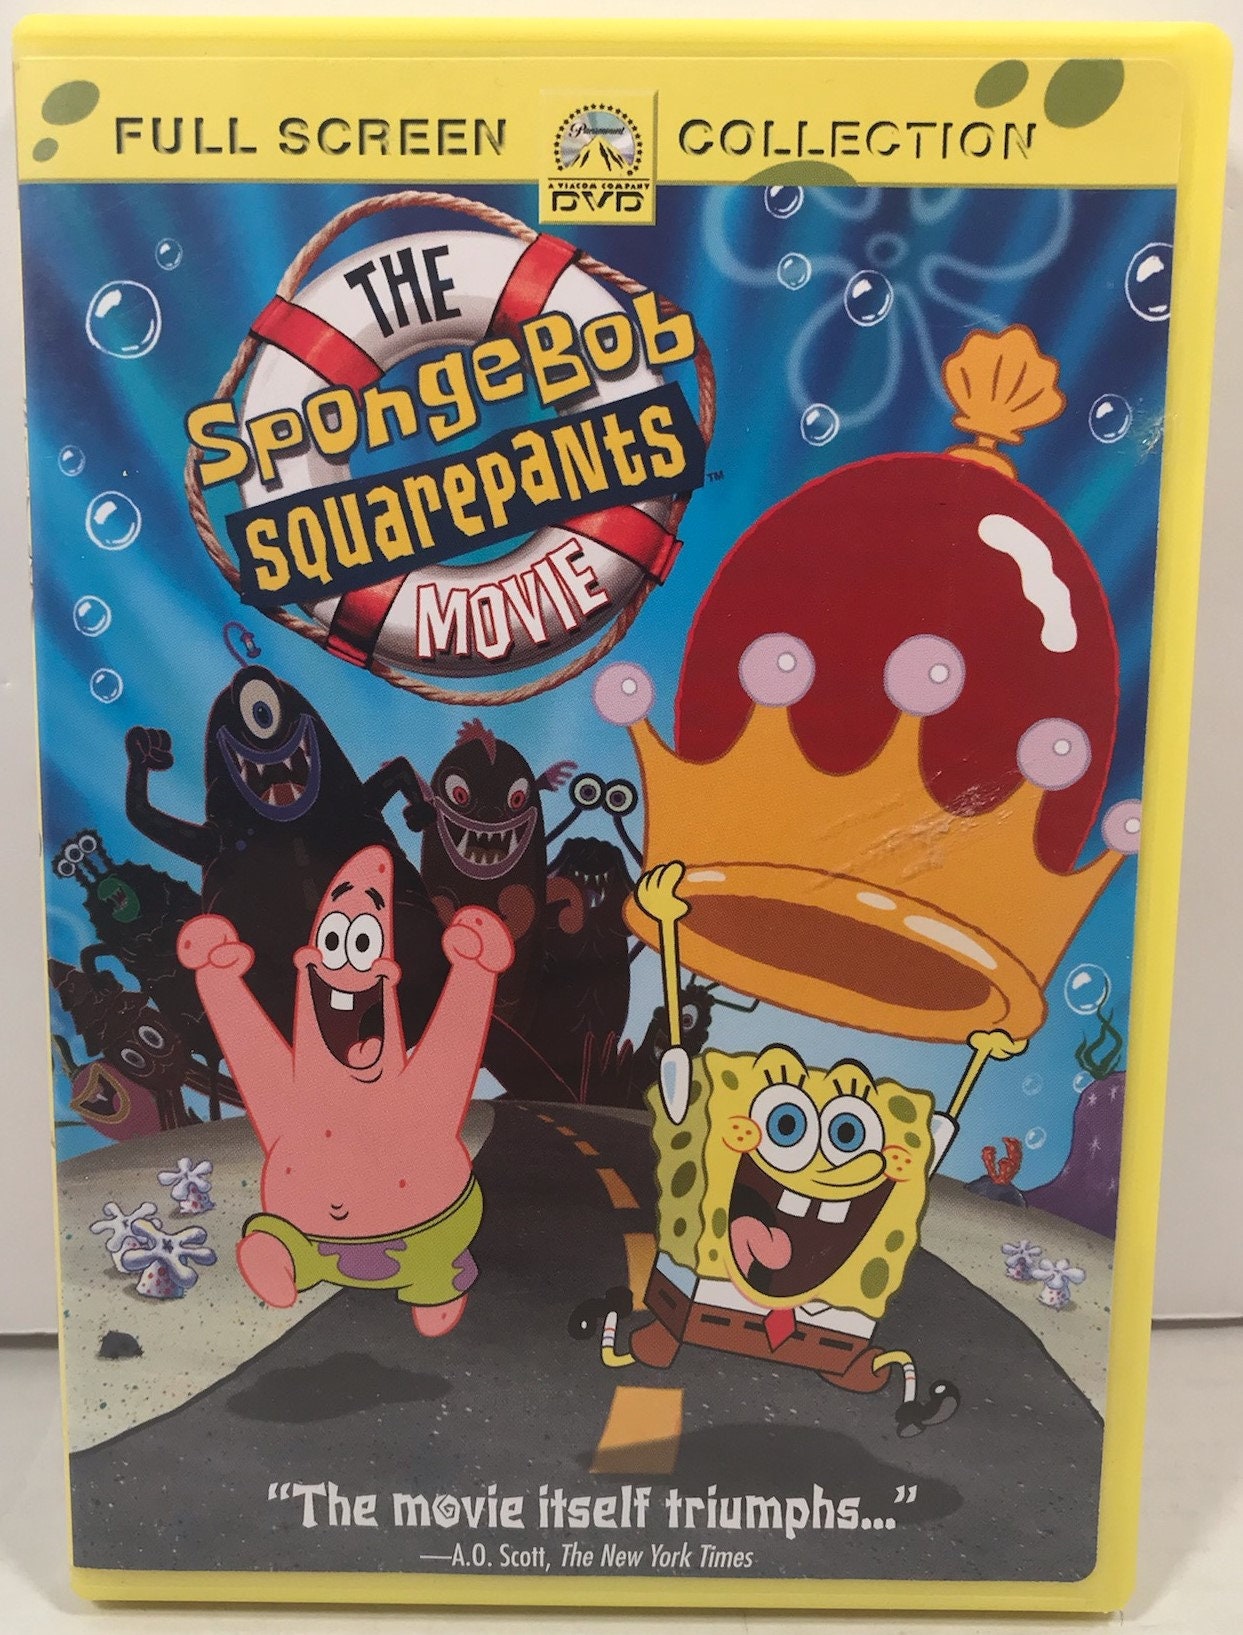 spongebob dvd